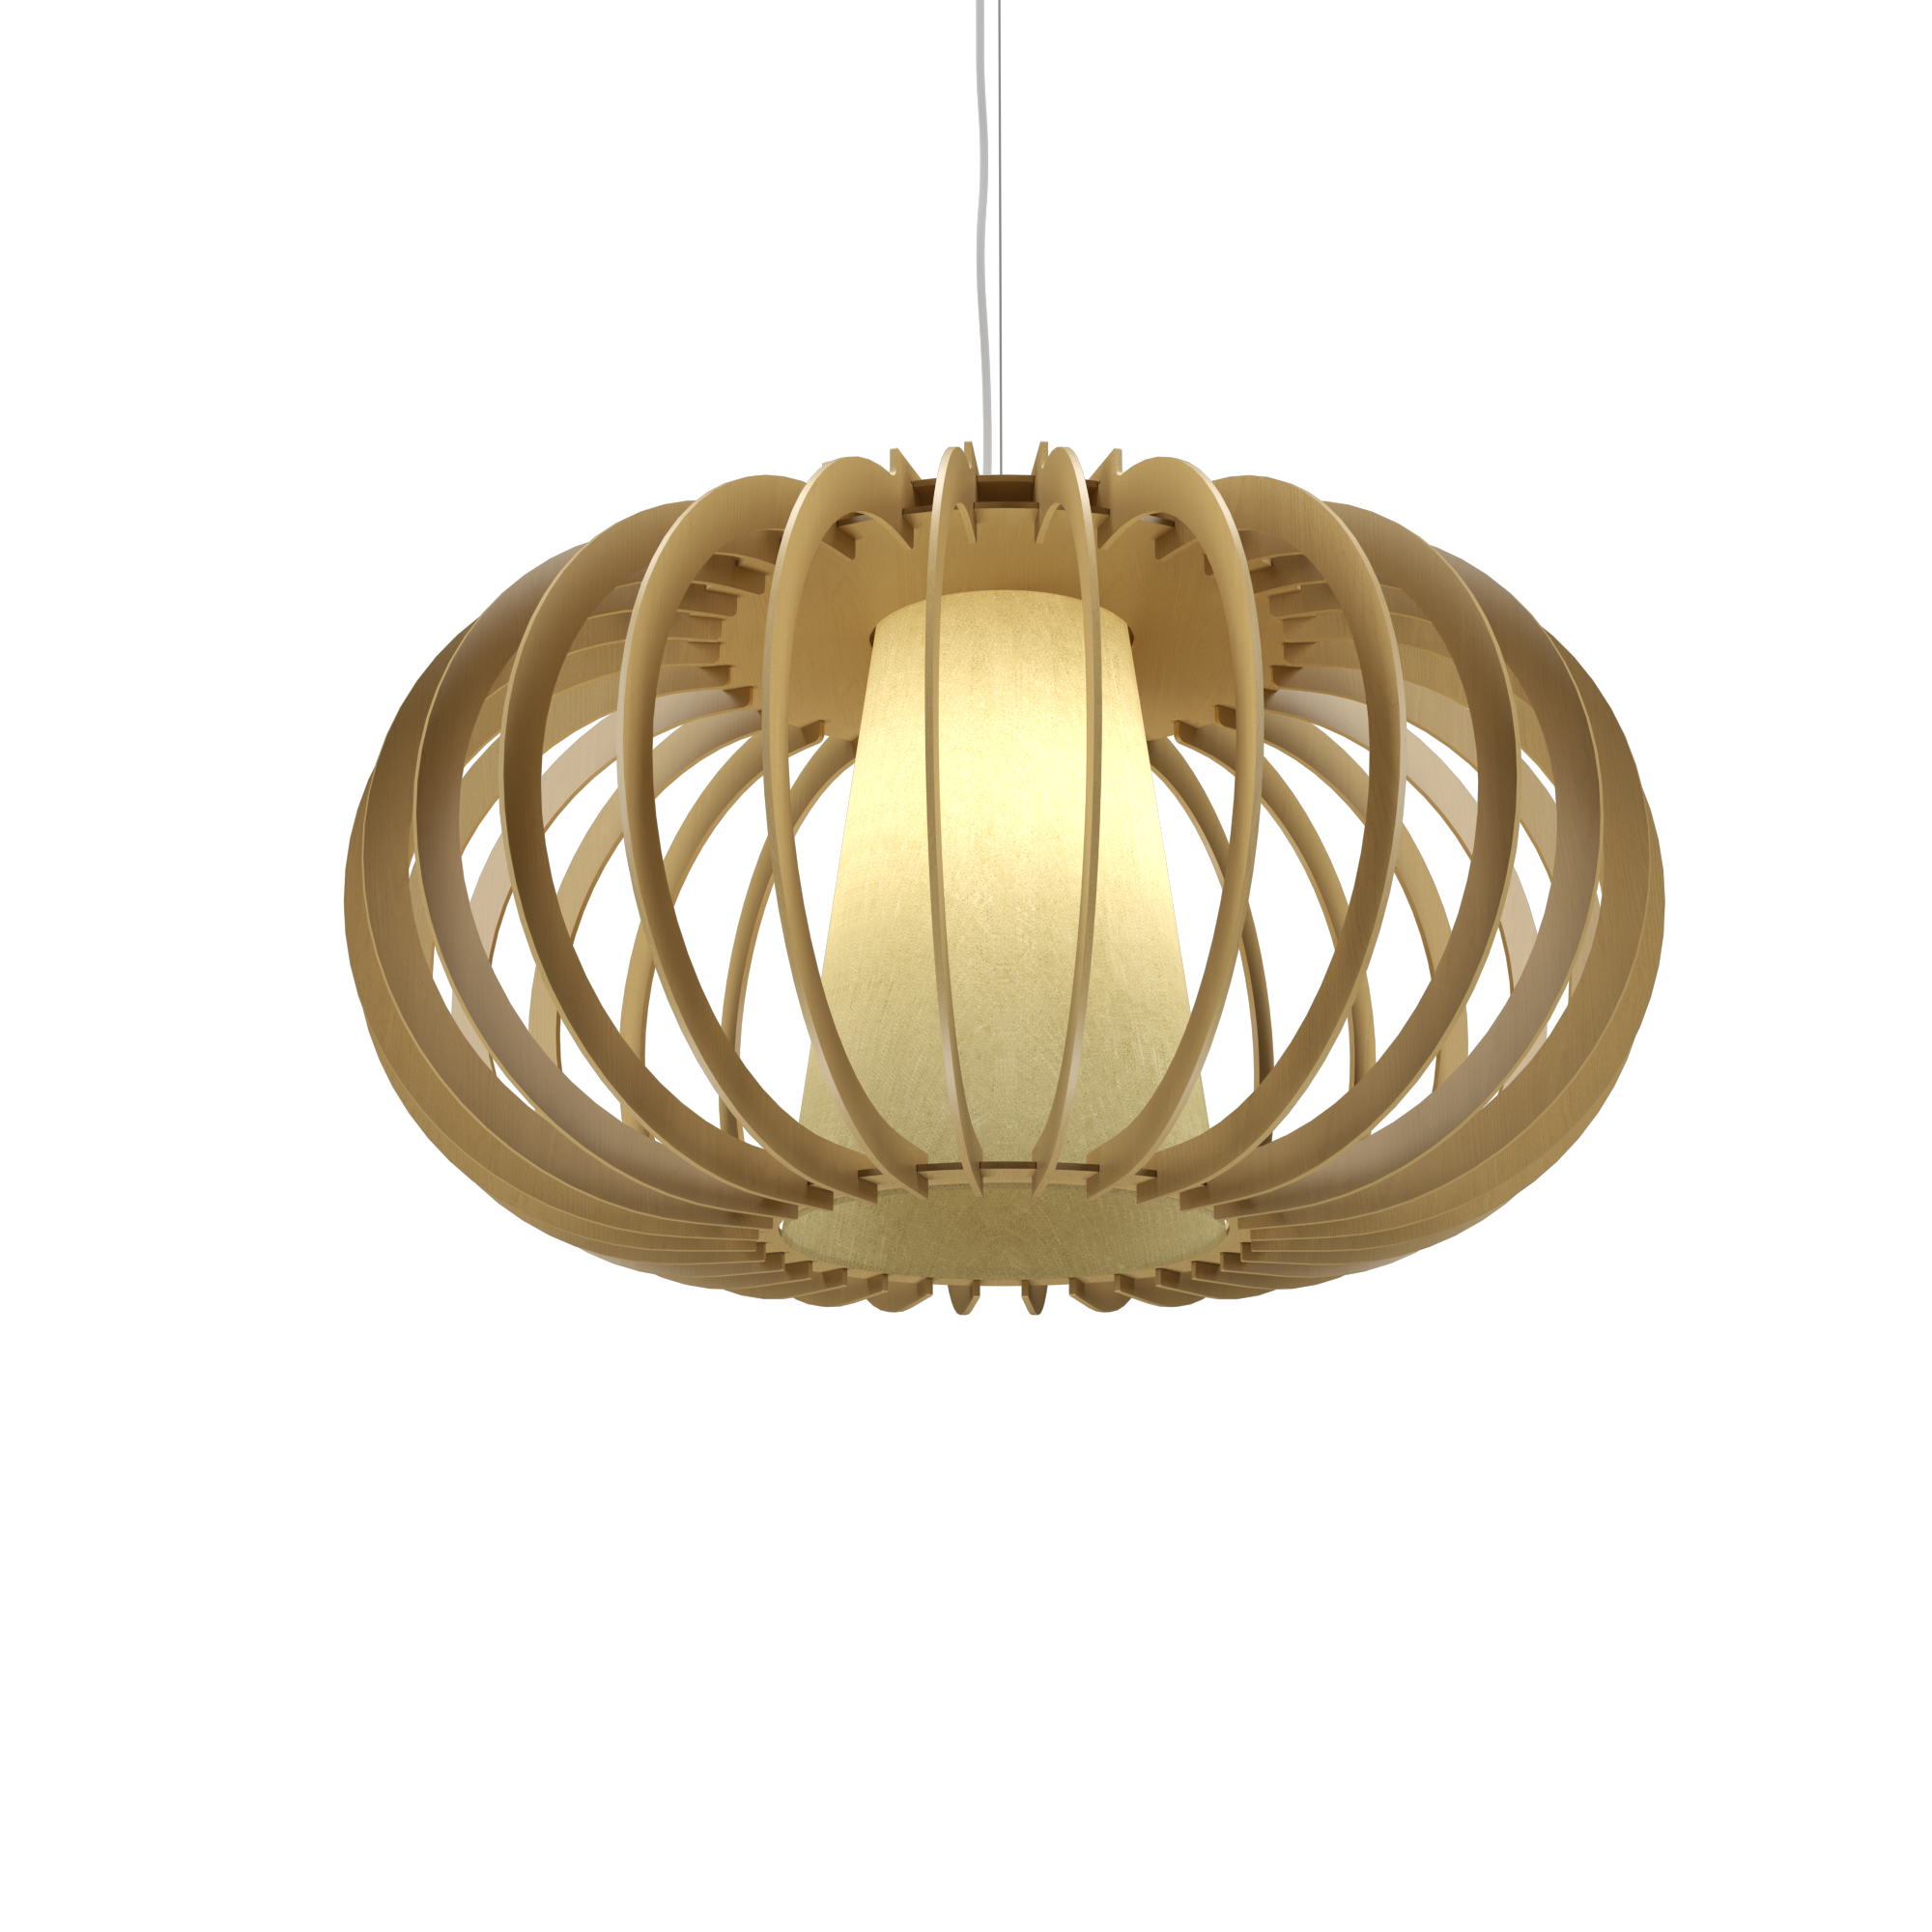 Pendant Lamp Accord Stecche Di Legno 1489 - Stecche Di Legno Line Accord Lighting | 49. Organic Gold